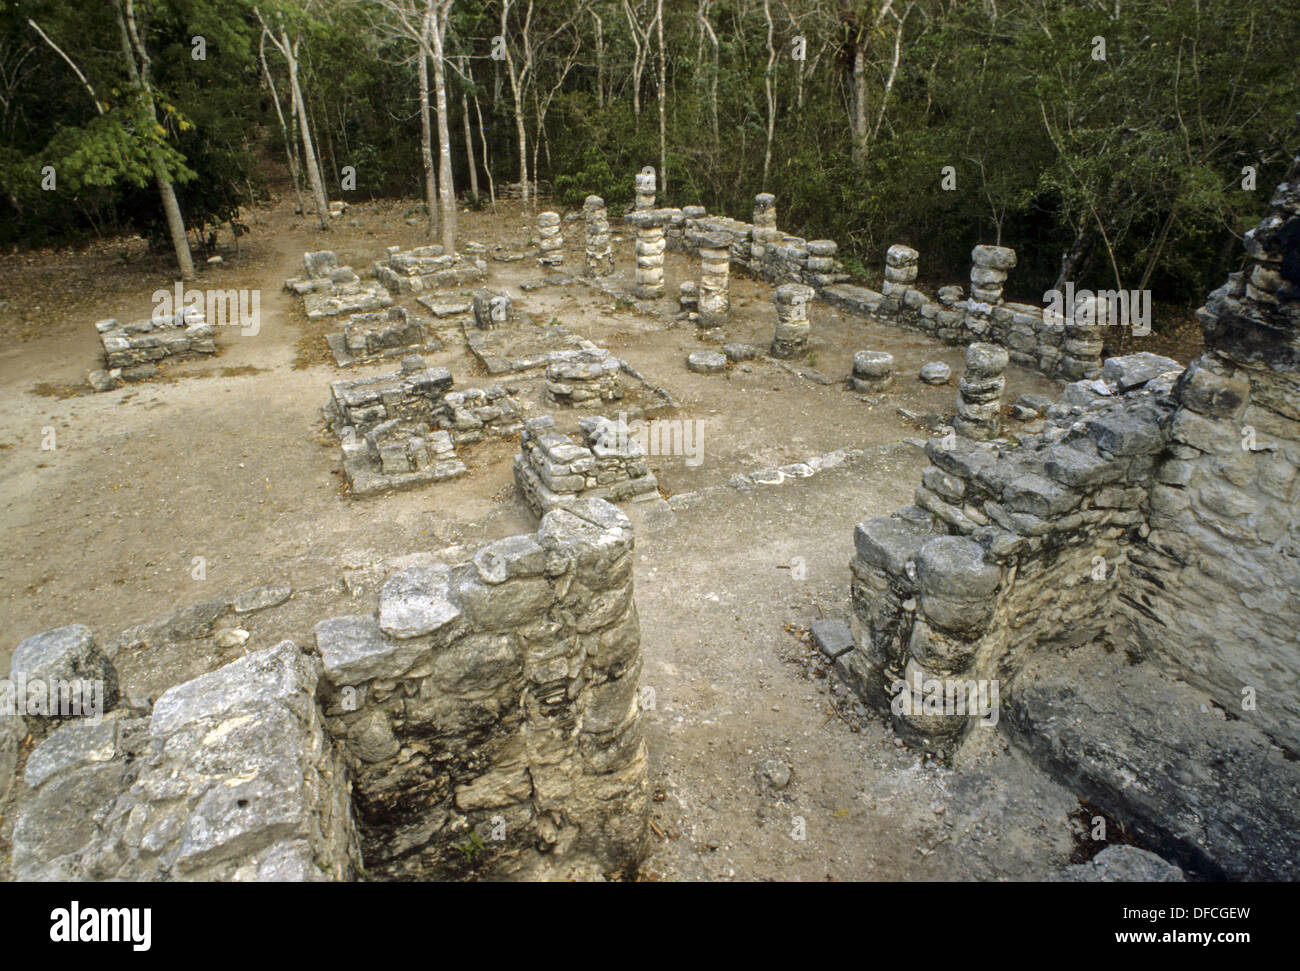 Coba, ville en ruines de la civilisation maya précolombienne. Quintana Roo, Mexique Banque D'Images